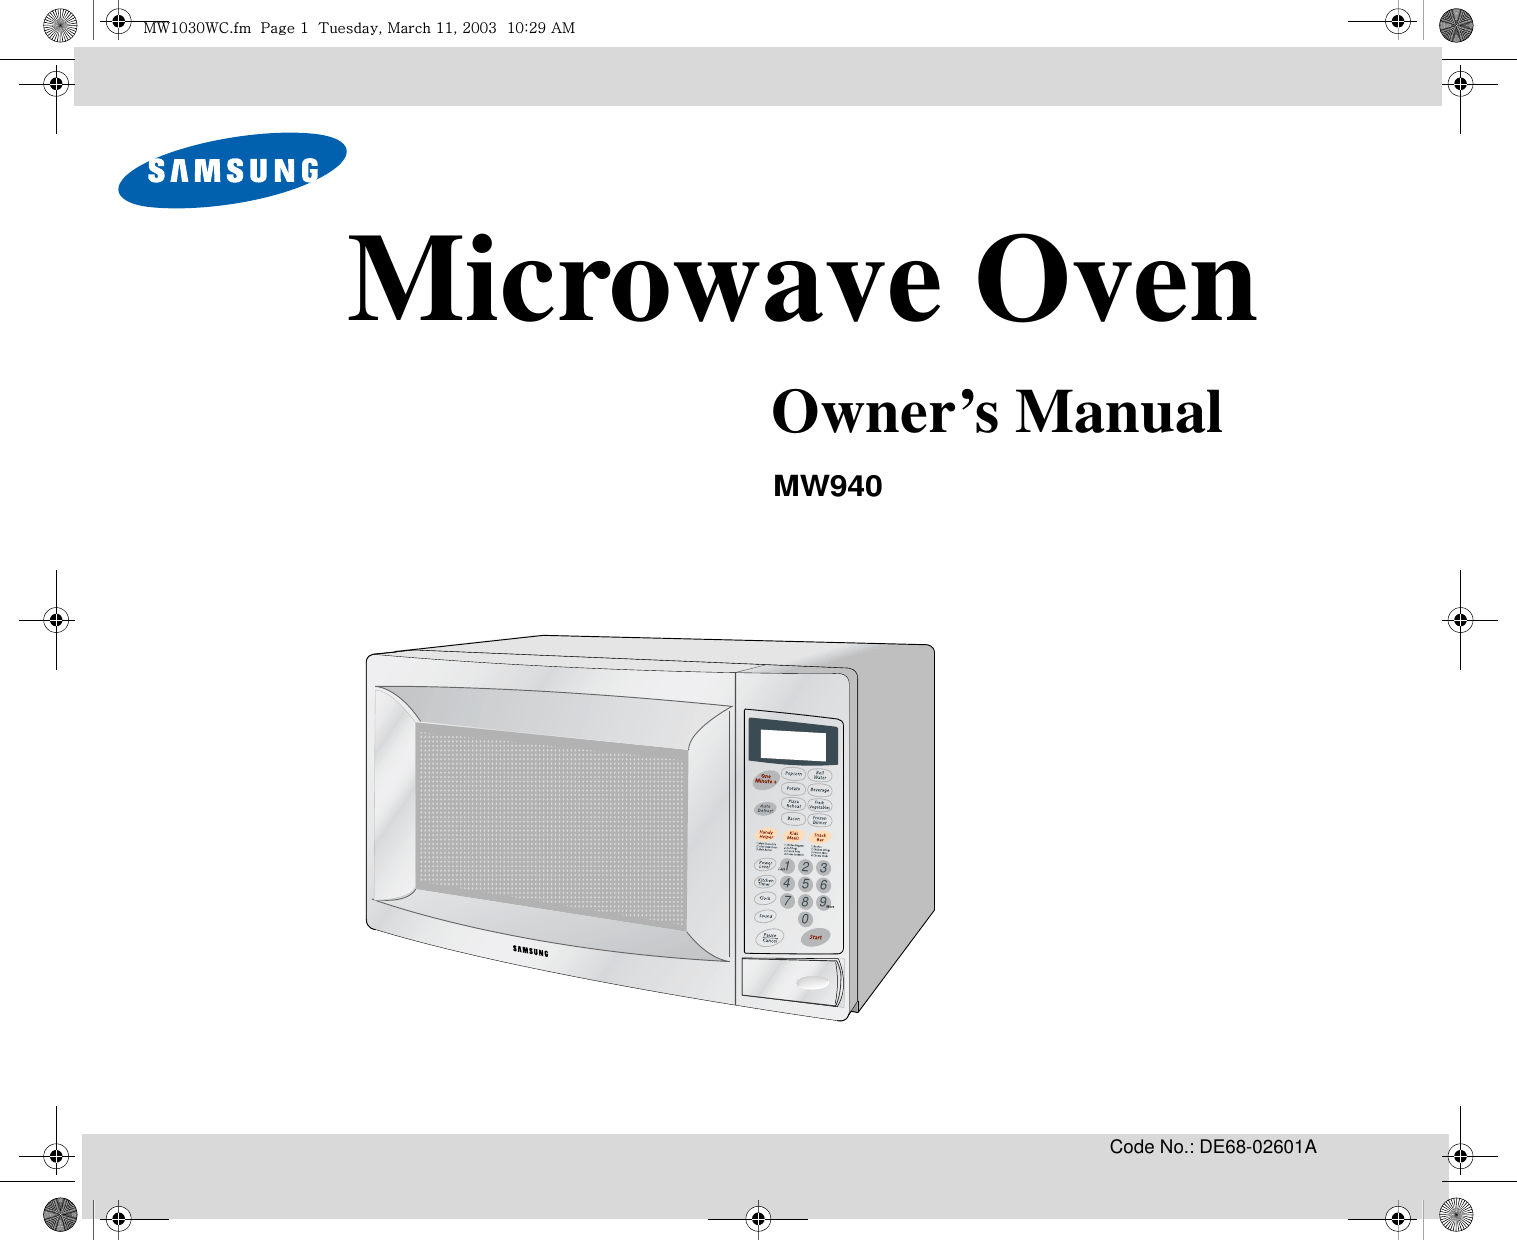 Code No.: DE68-02601A3216549870Microwave OvenOwner’s ManualMW940t~XWZW~jUGGwGXGG{SGtGXXSGYWWZGGXWaY`Ght